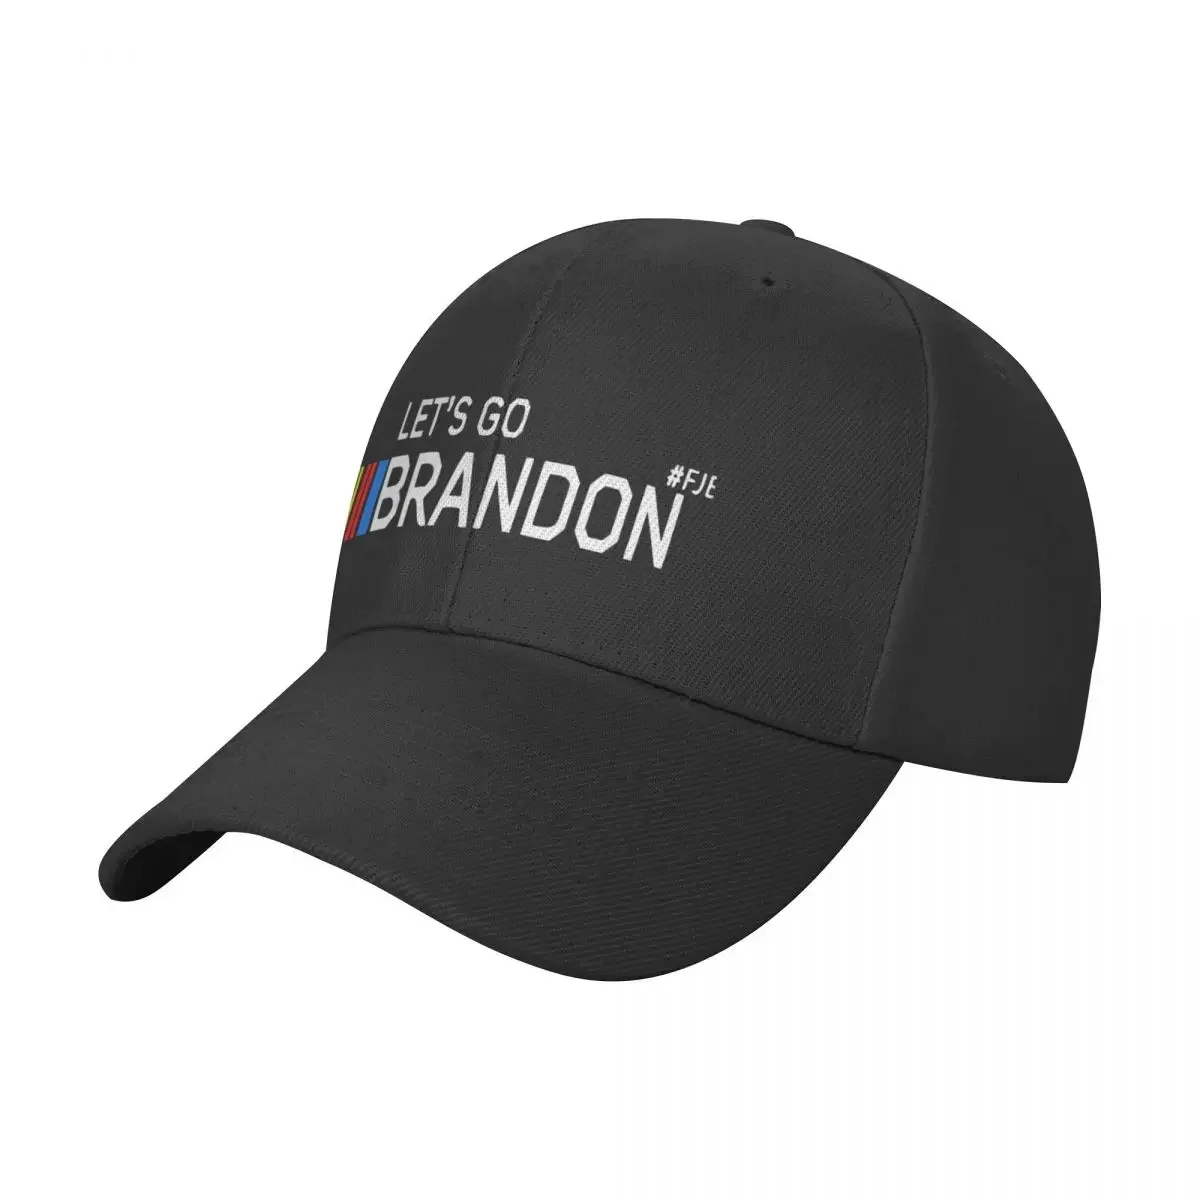 

Let's Go Brandon Baseball Cap Thermal Visor birthday derby hat Golf Men Women's